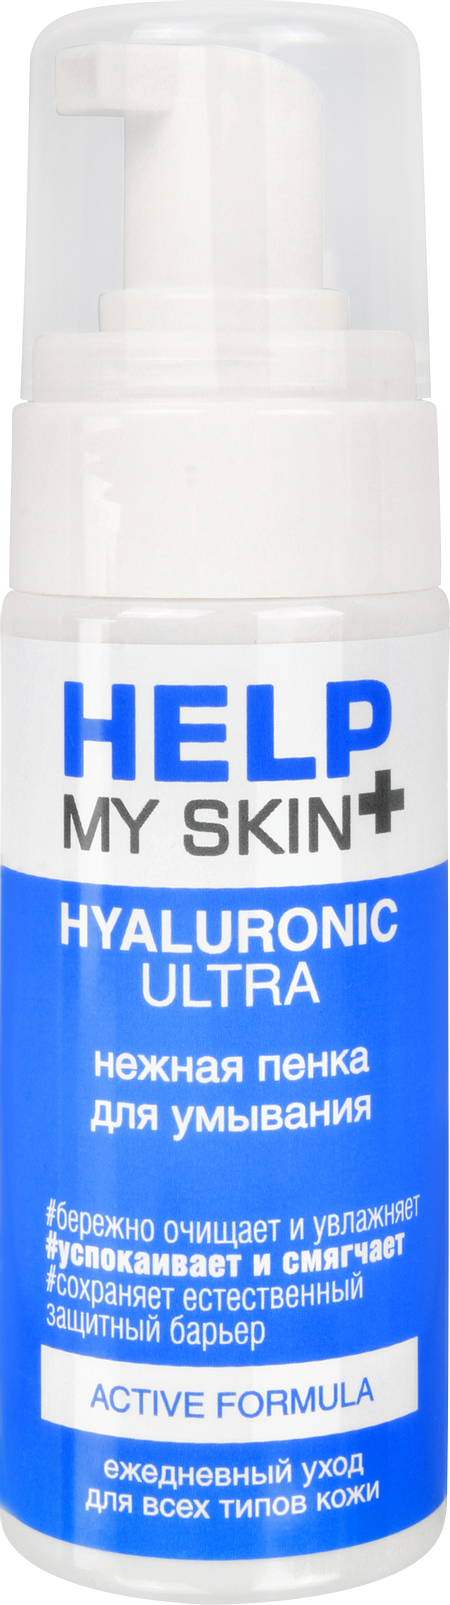 Нежная пенка для умывания Help my skin Hyaluronic 